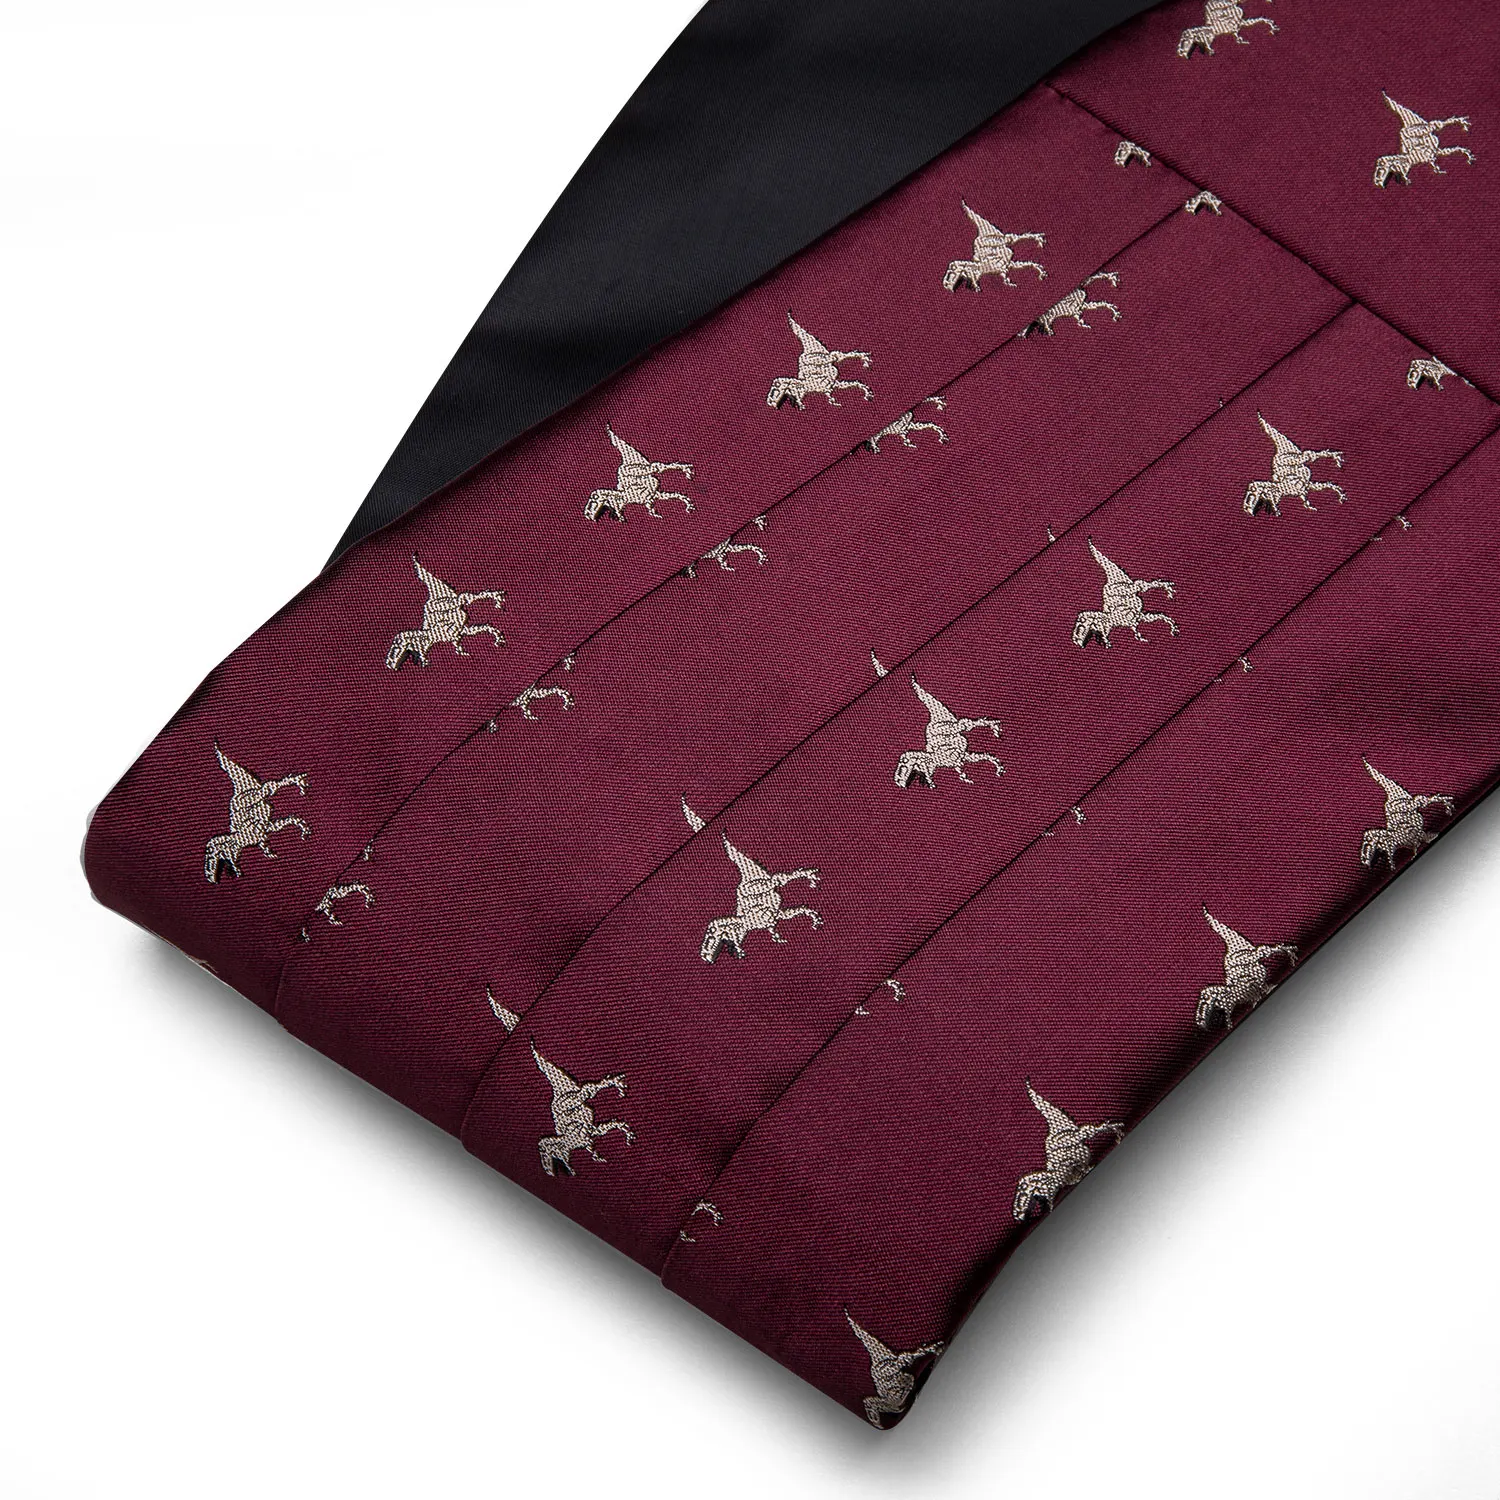 Пояс динозавра для мужчин, красный шелковый галстук-бабочка, платок, запонки, набор свадебных бантов, пояс для костюма смокинга, Барри, Ван YF-1008